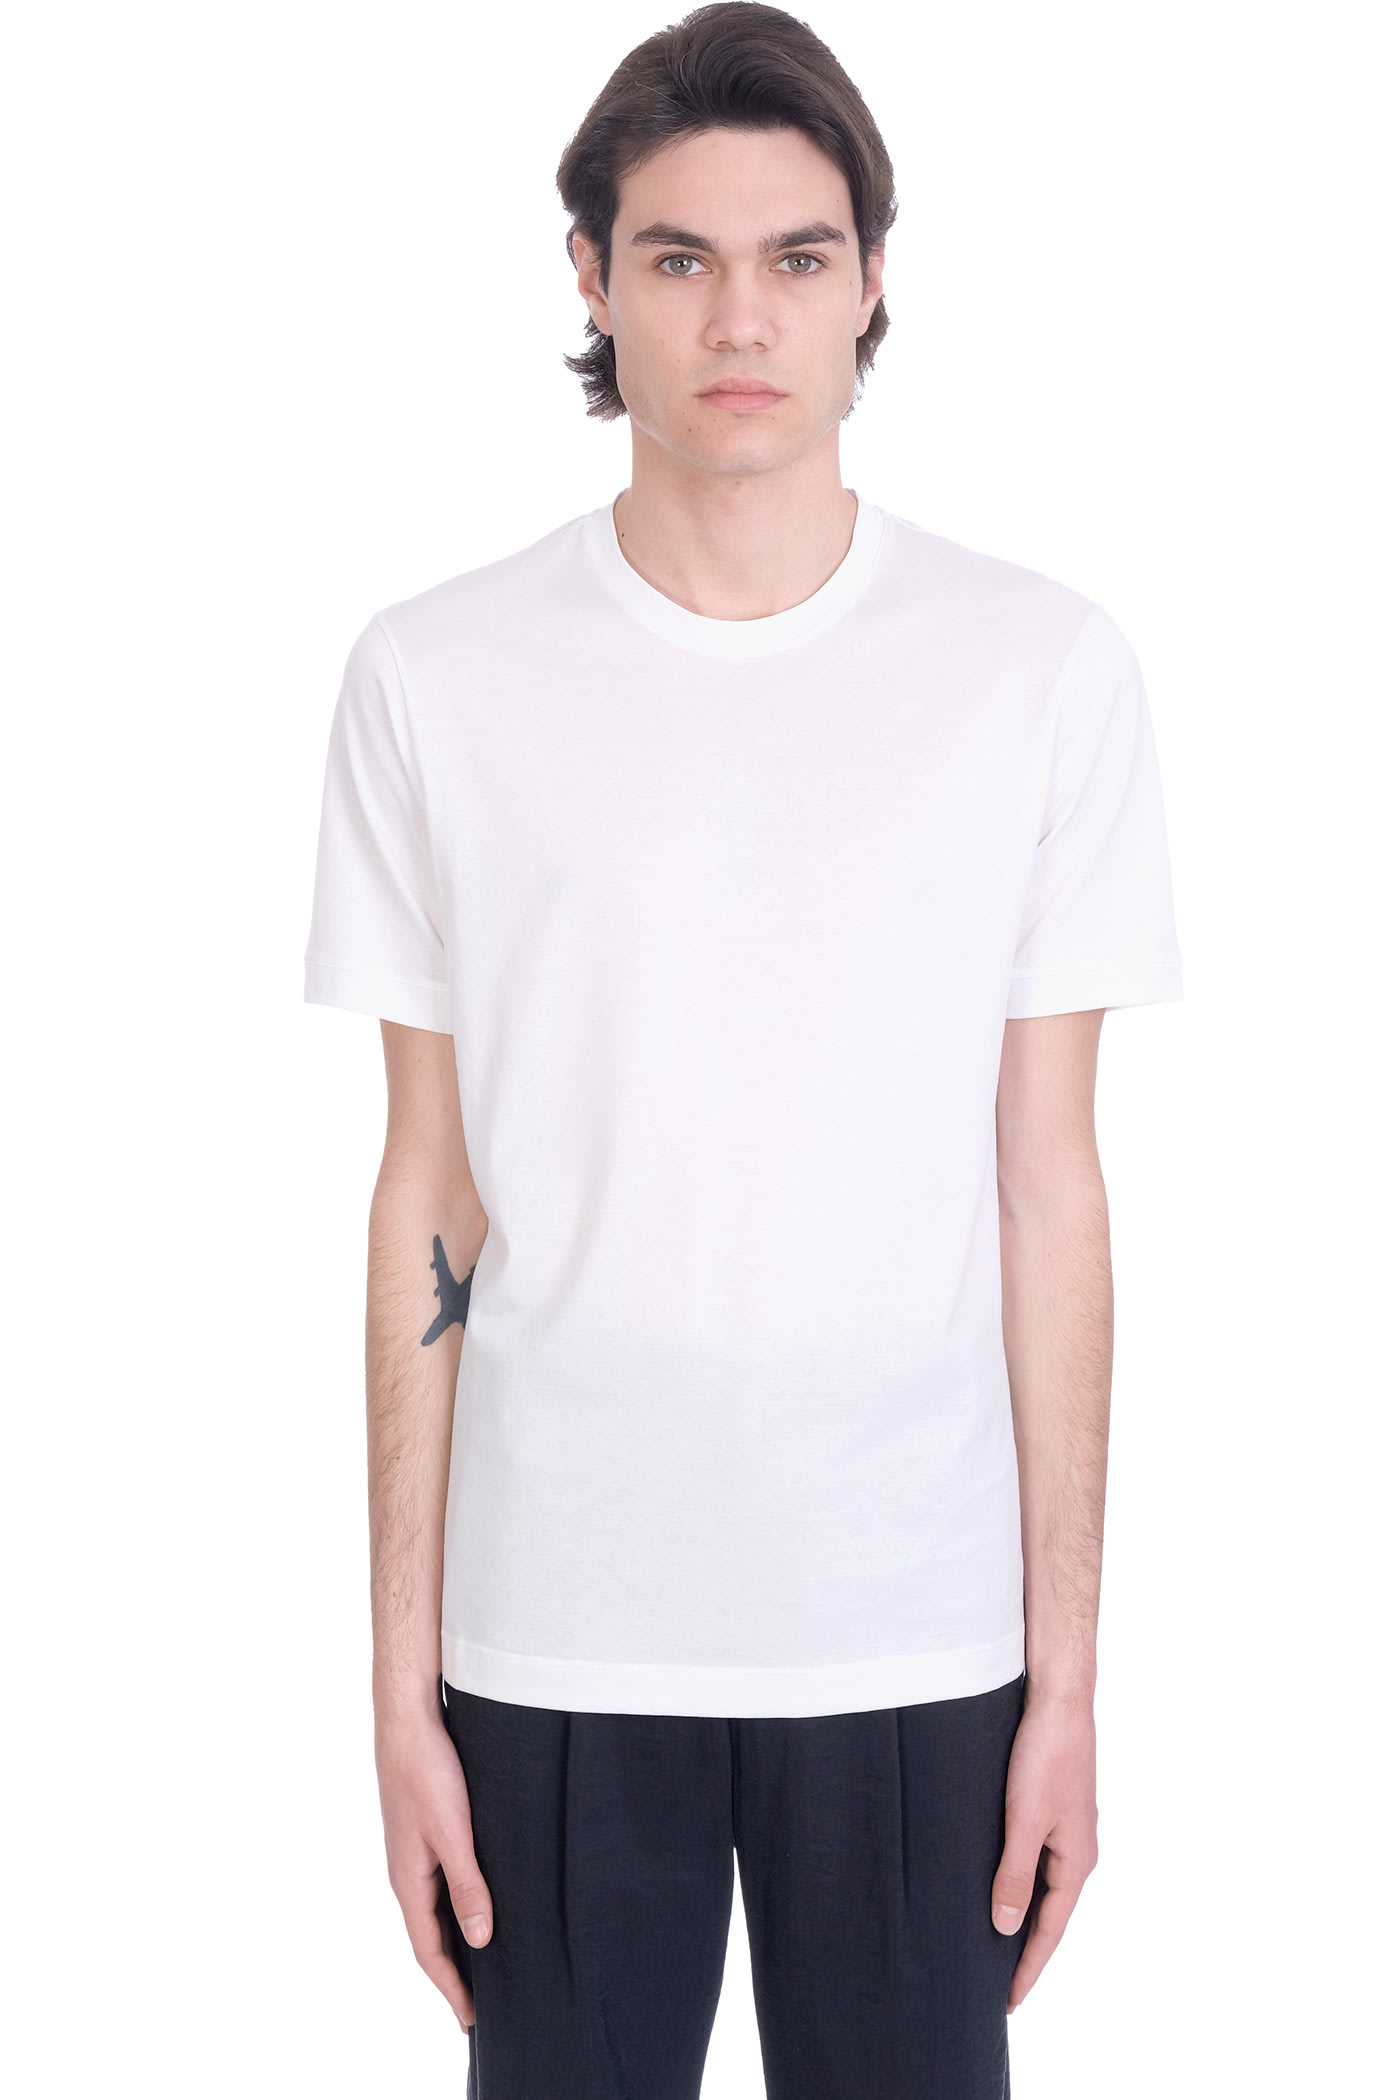 Giorgio Armani T-shirt In White Cotton